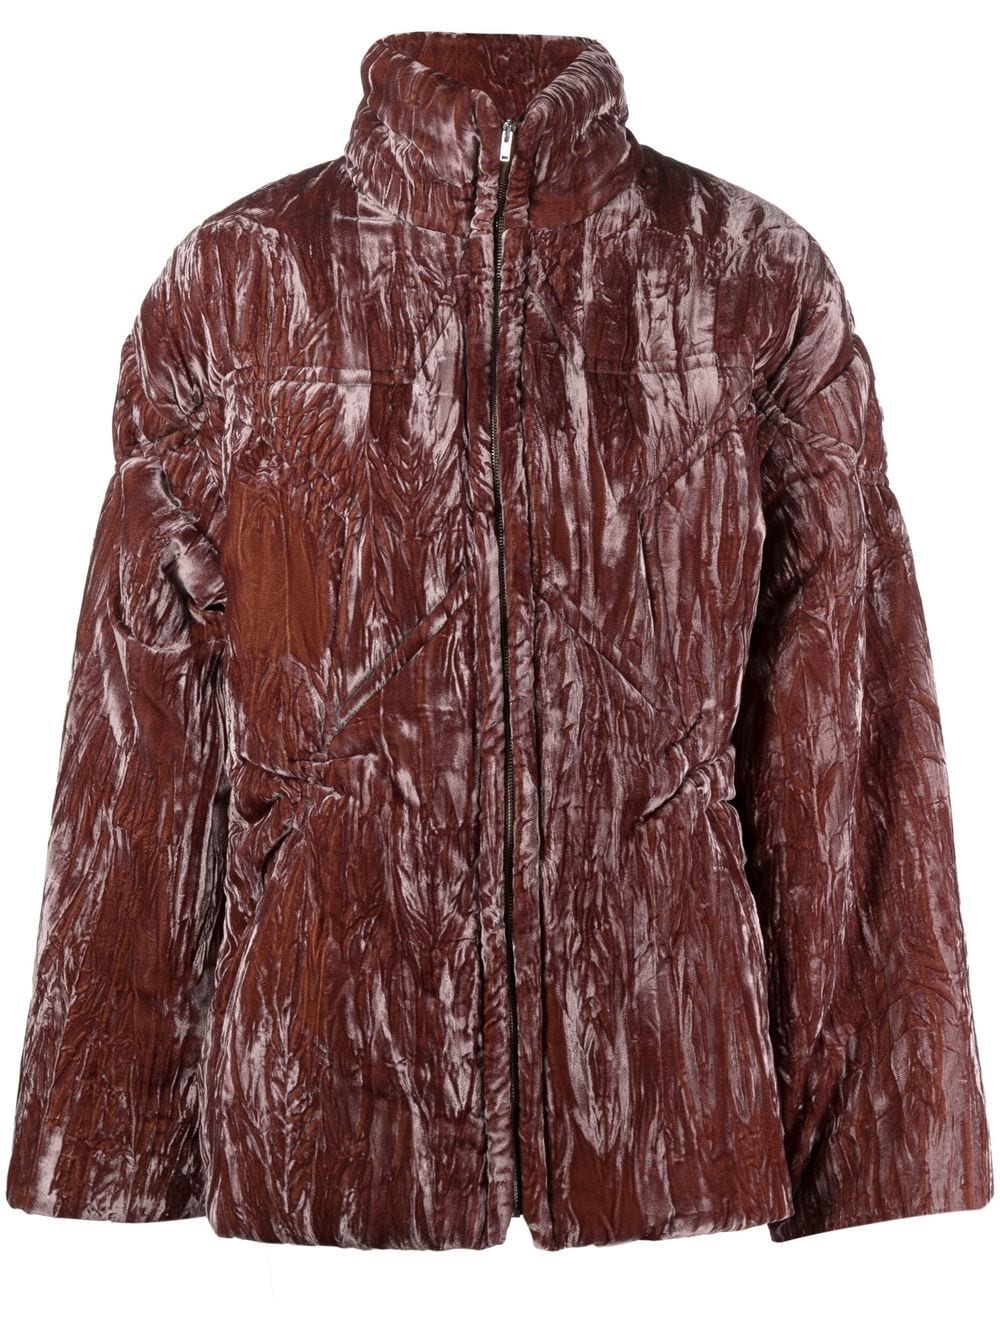 Star crushed-velvet puffer jacket